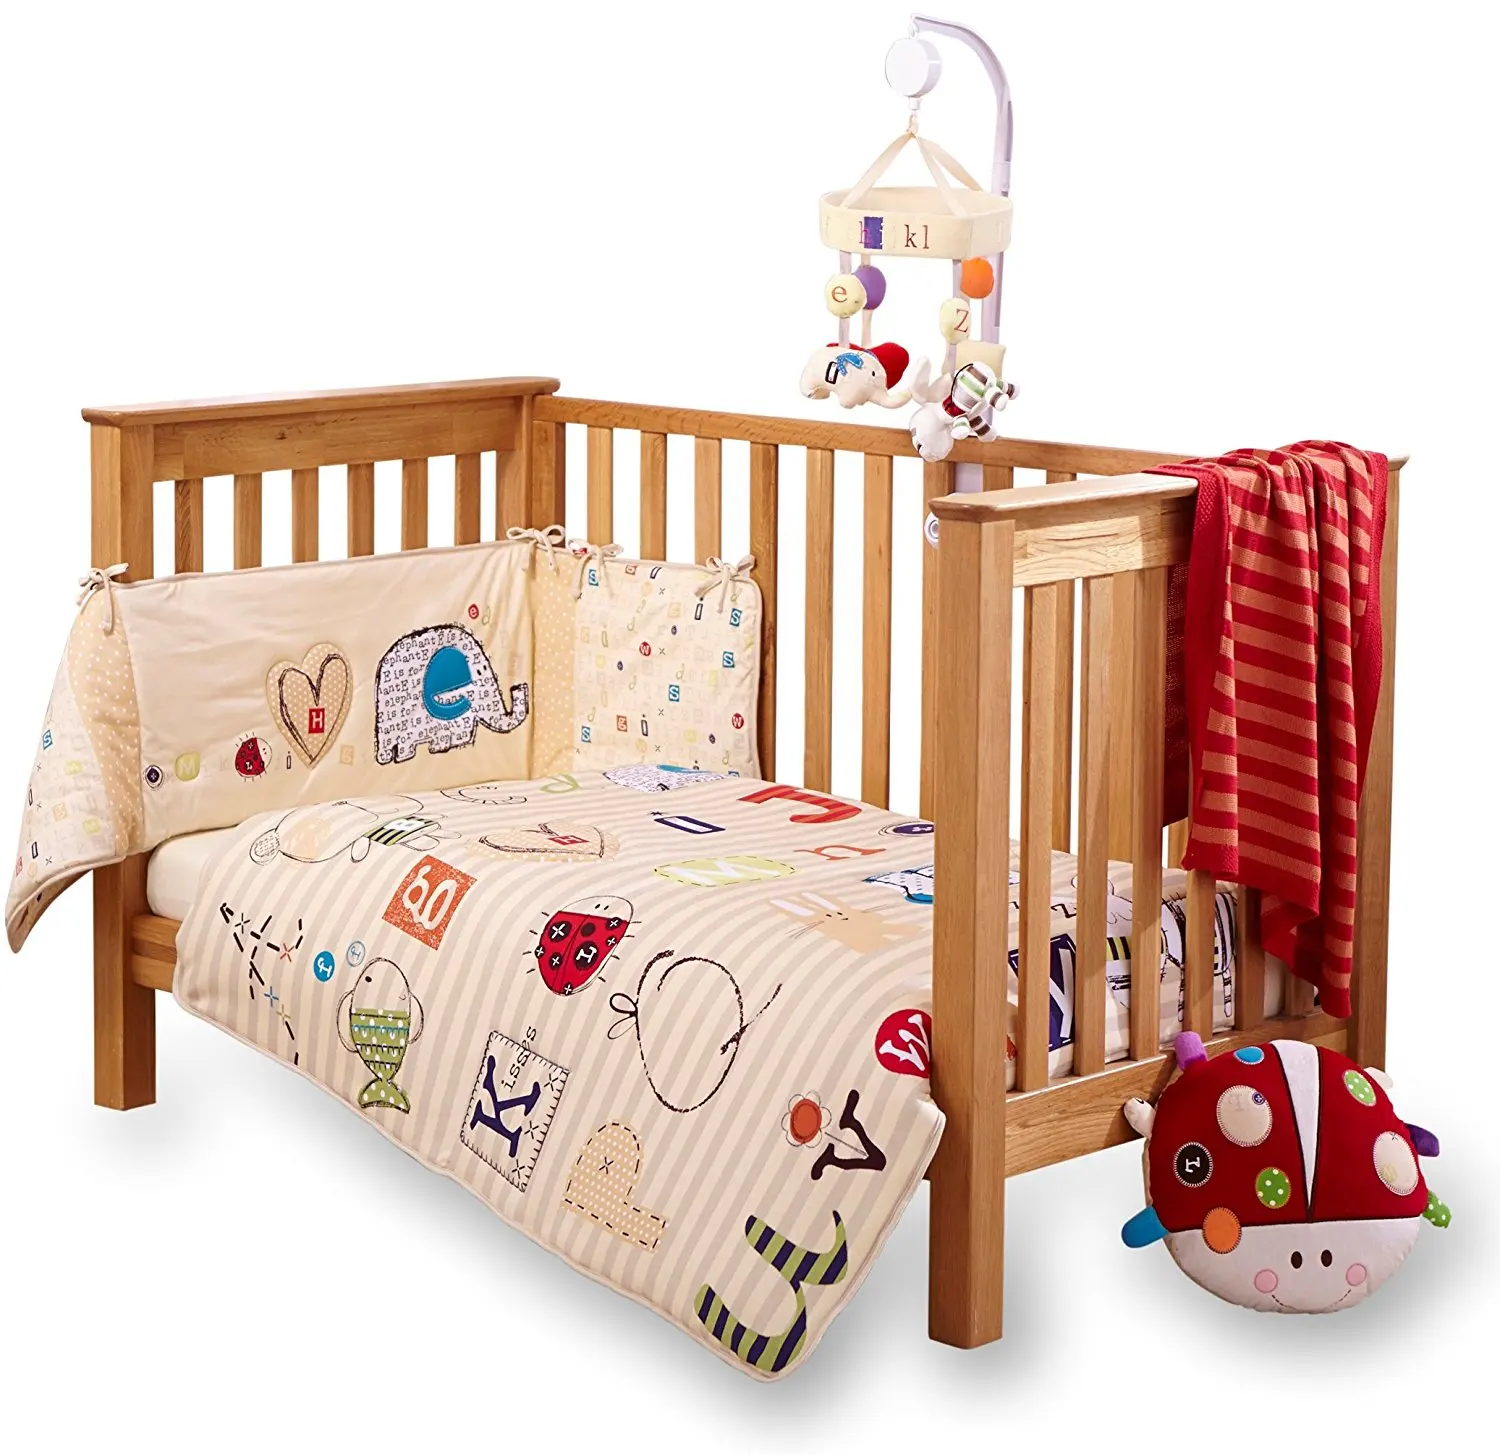 baby cot bedding sets argos